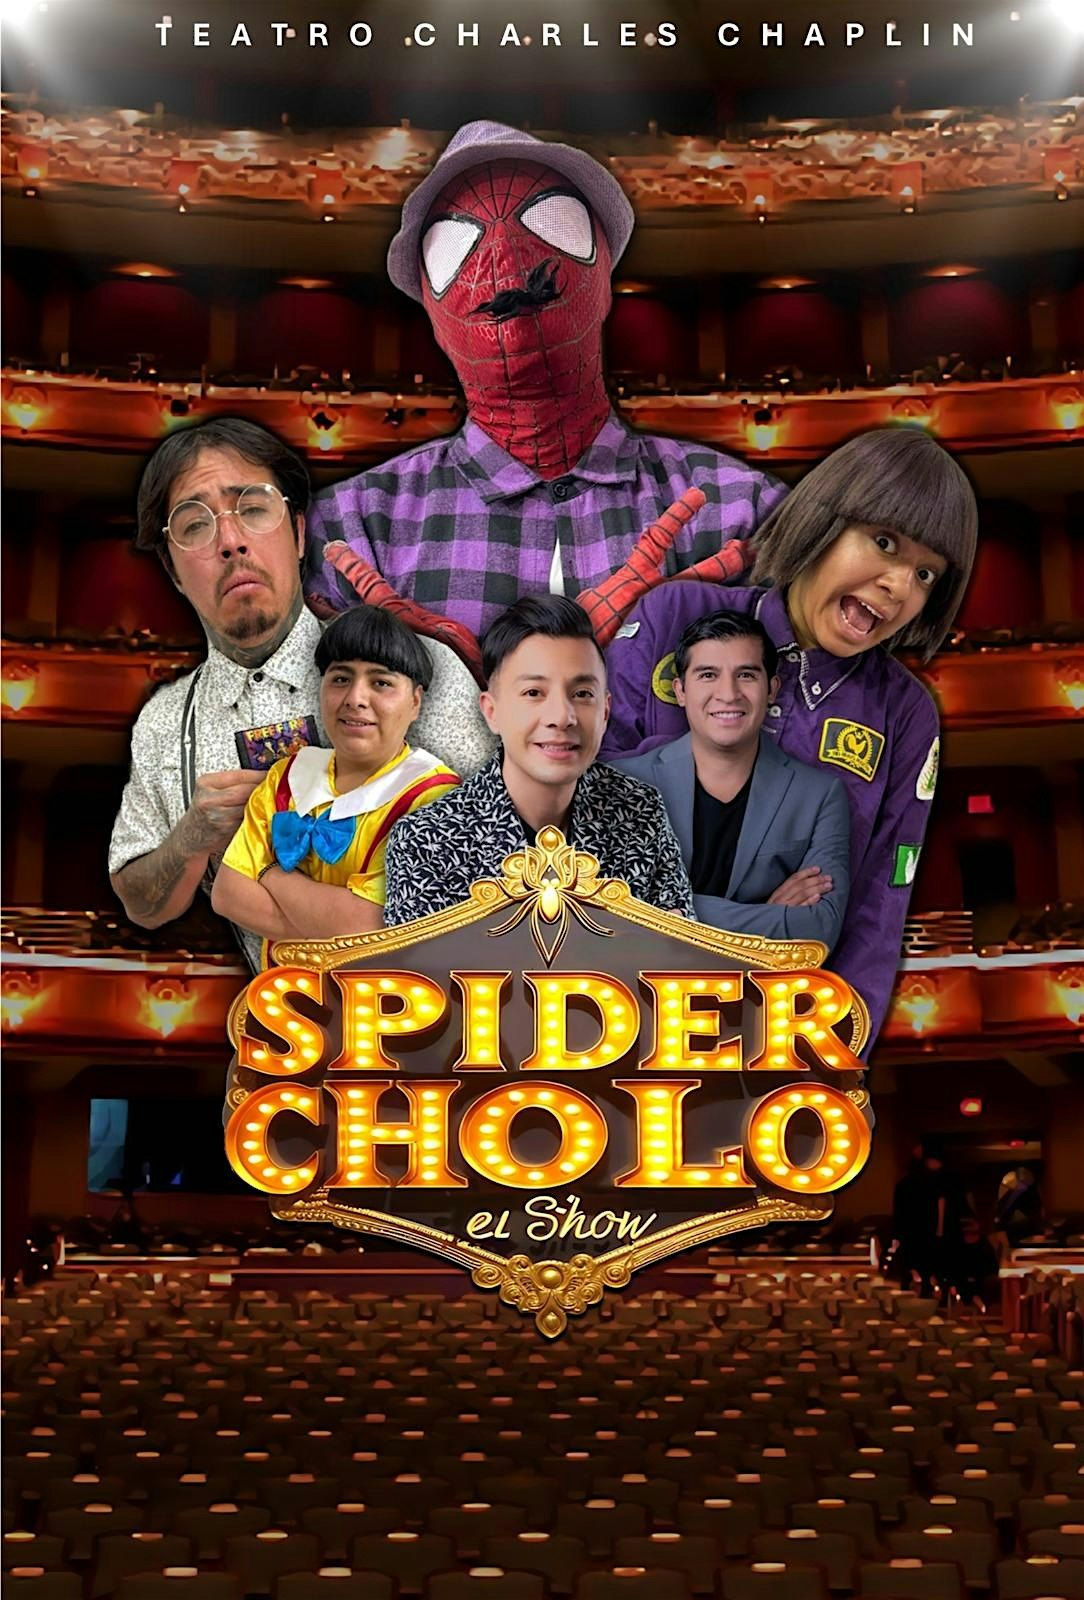 SpiderCholo El Show